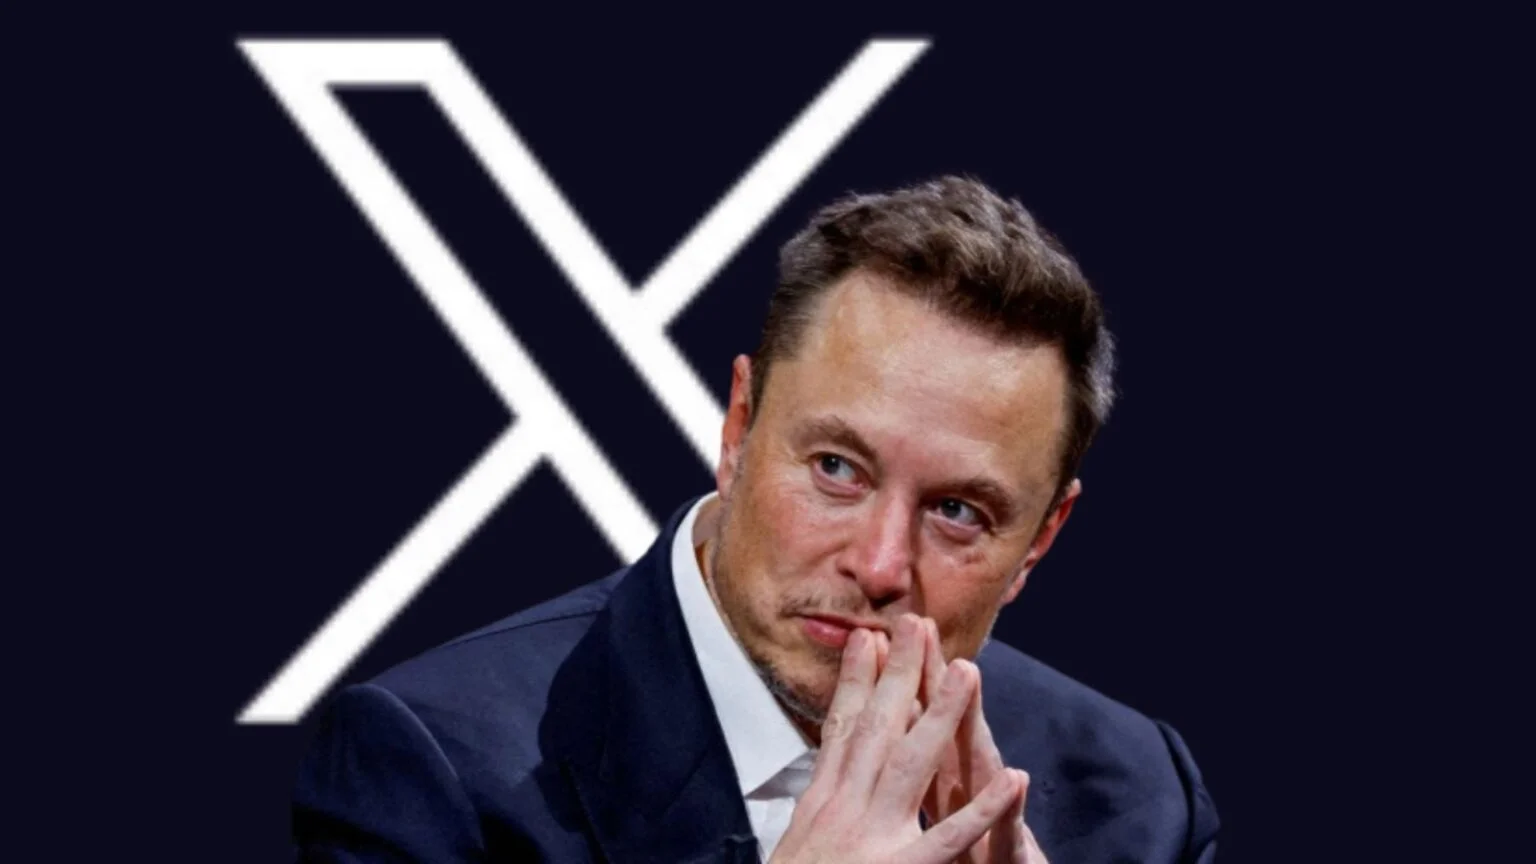 X apre al sesso: Elon Musk autorizza la pubblicazione di contenuti per adulti